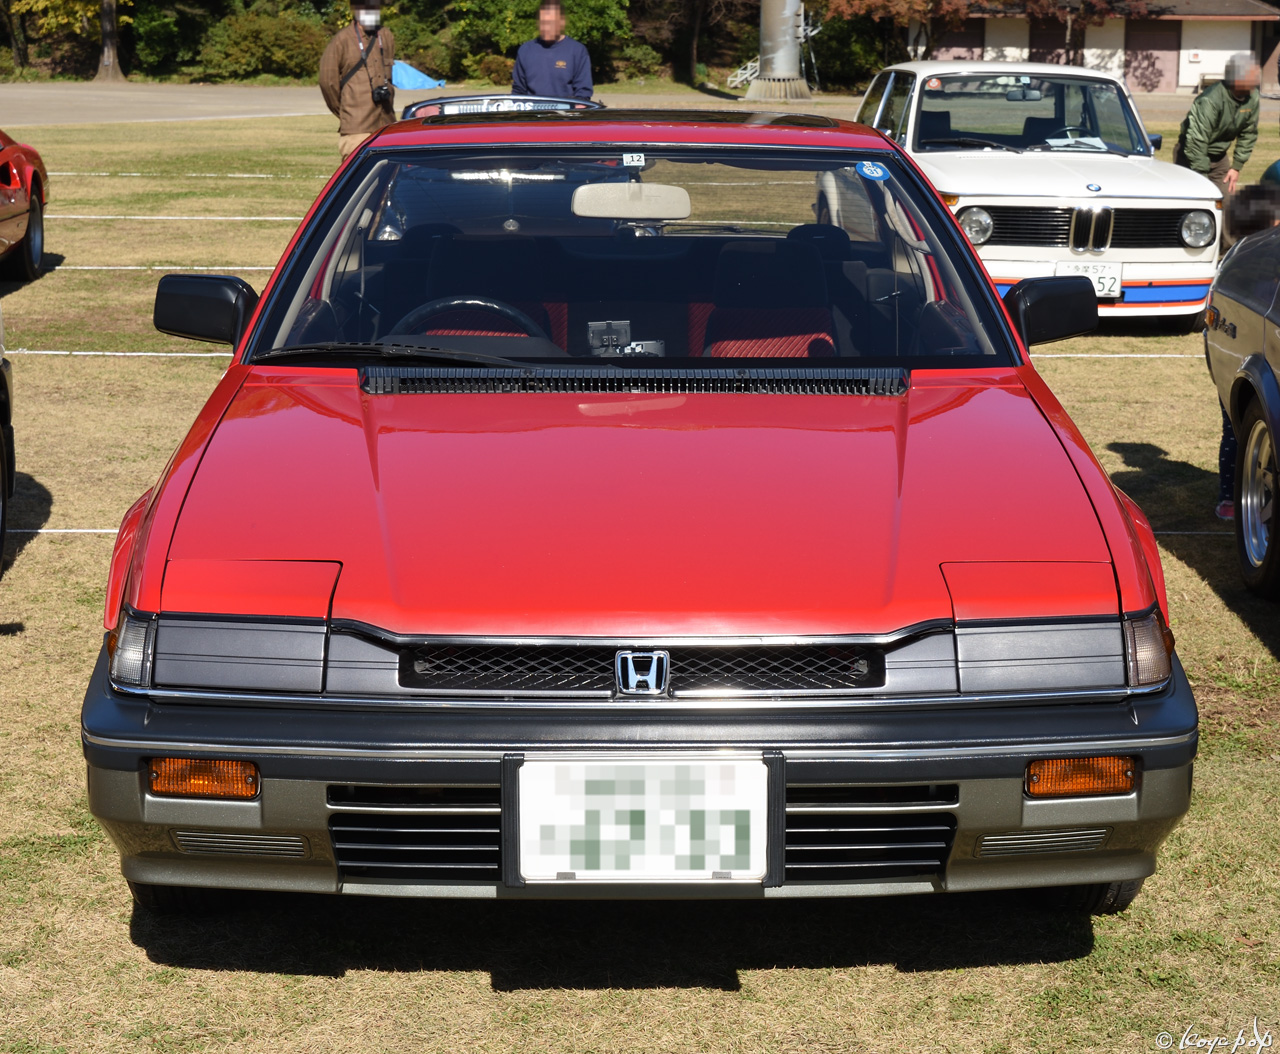 Honda Prelude 1982 フェンダーより一段低いフード面が印象的な2代目のホンダ プレリュード ☆